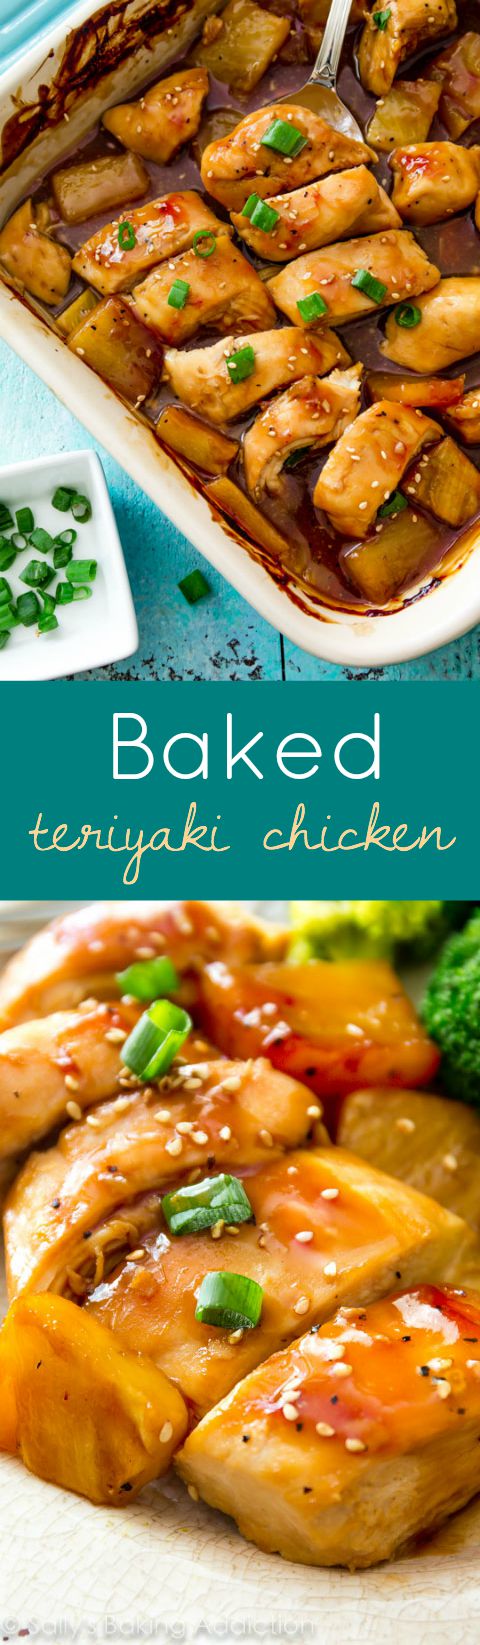 Versez simplement cette sauce teriyaki maison sur le poulet et faites cuire!